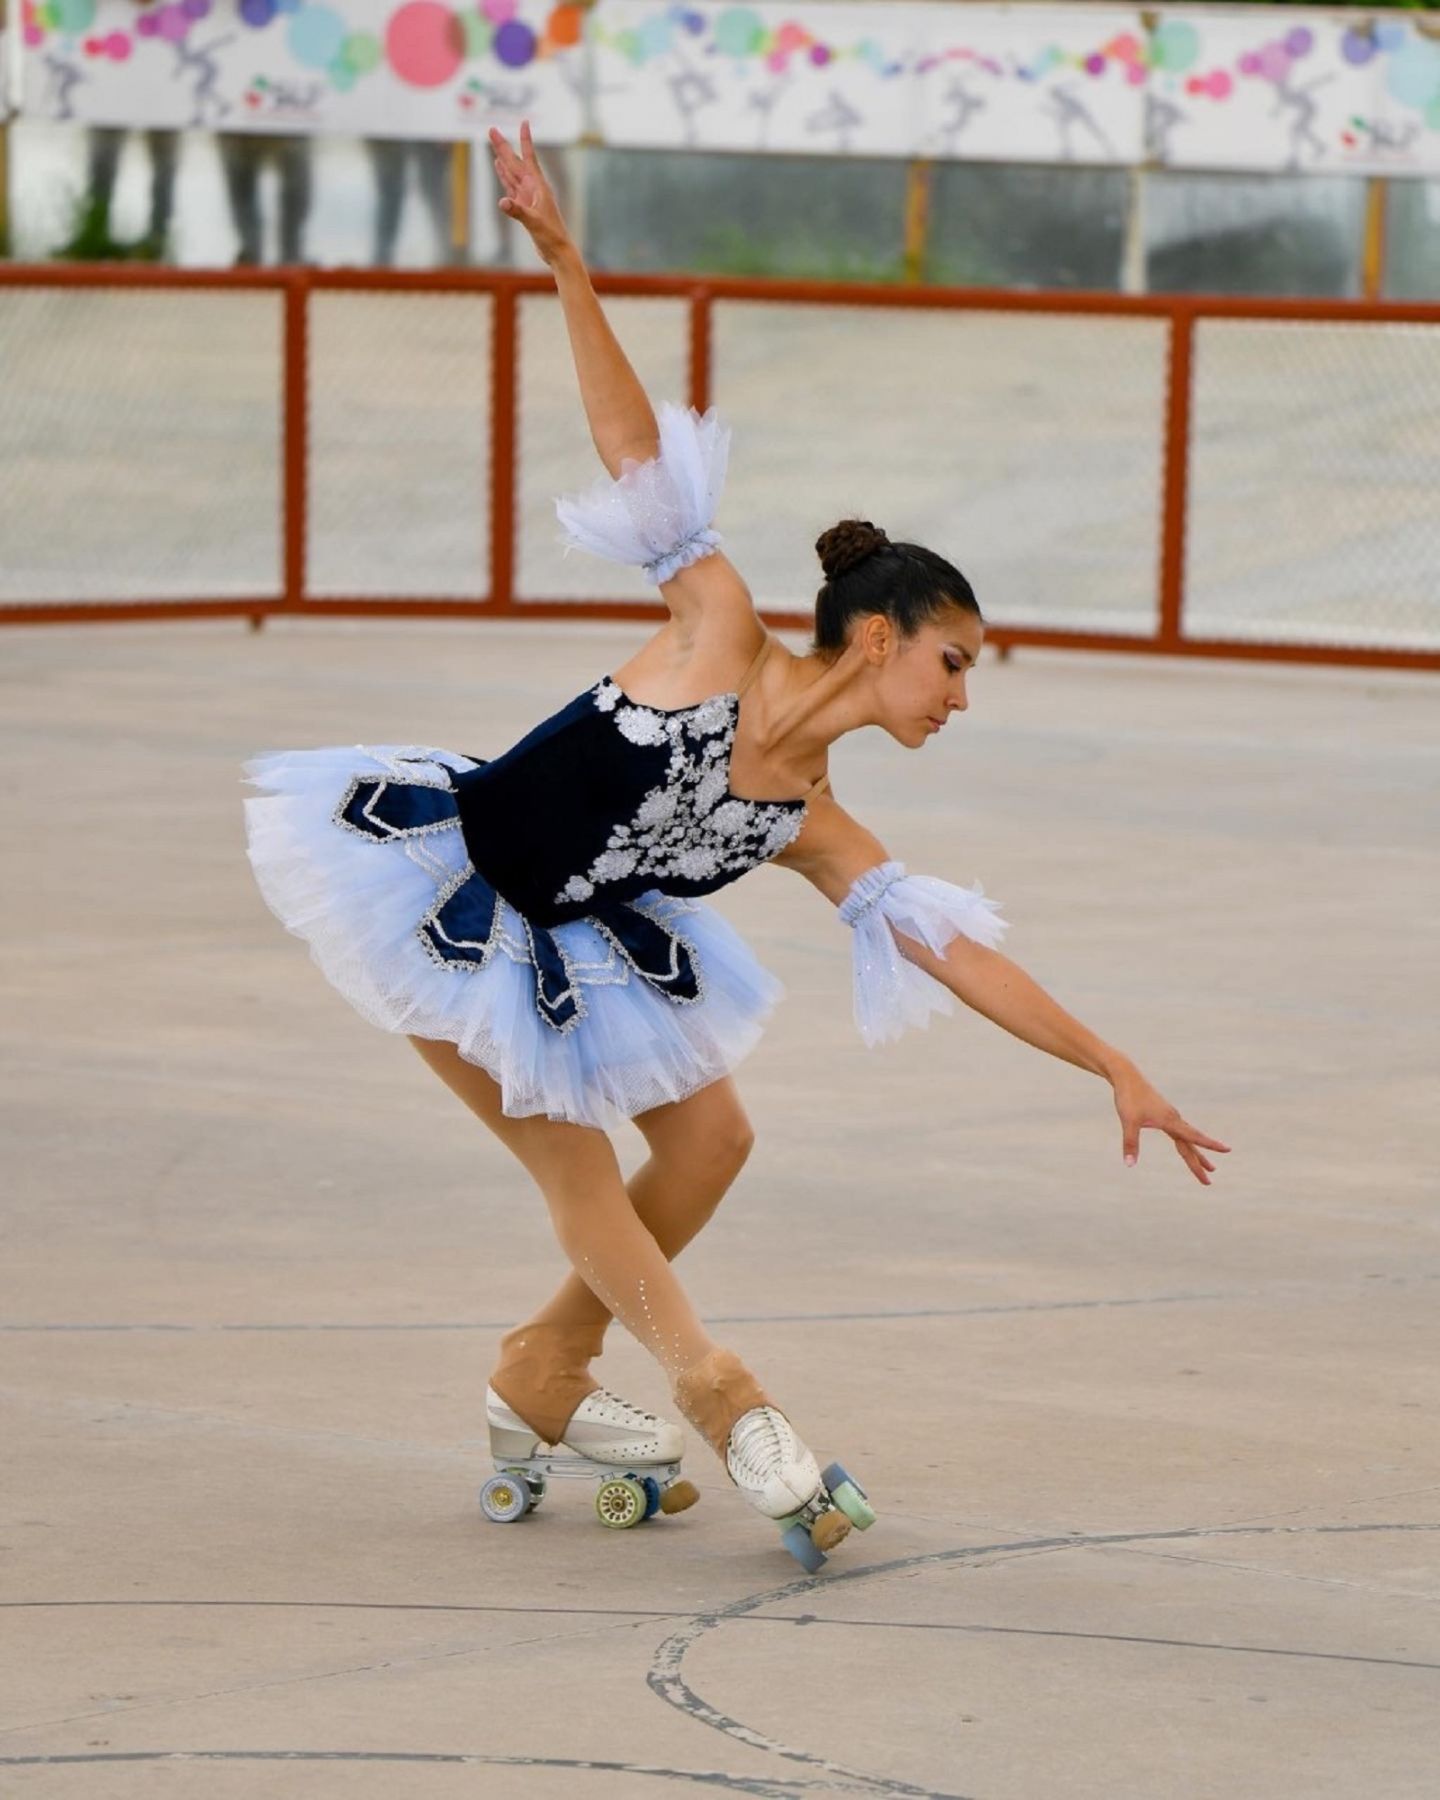 Llega Brenda Salazar al campeonato mundial de patinaje artístico sobre ruedas 